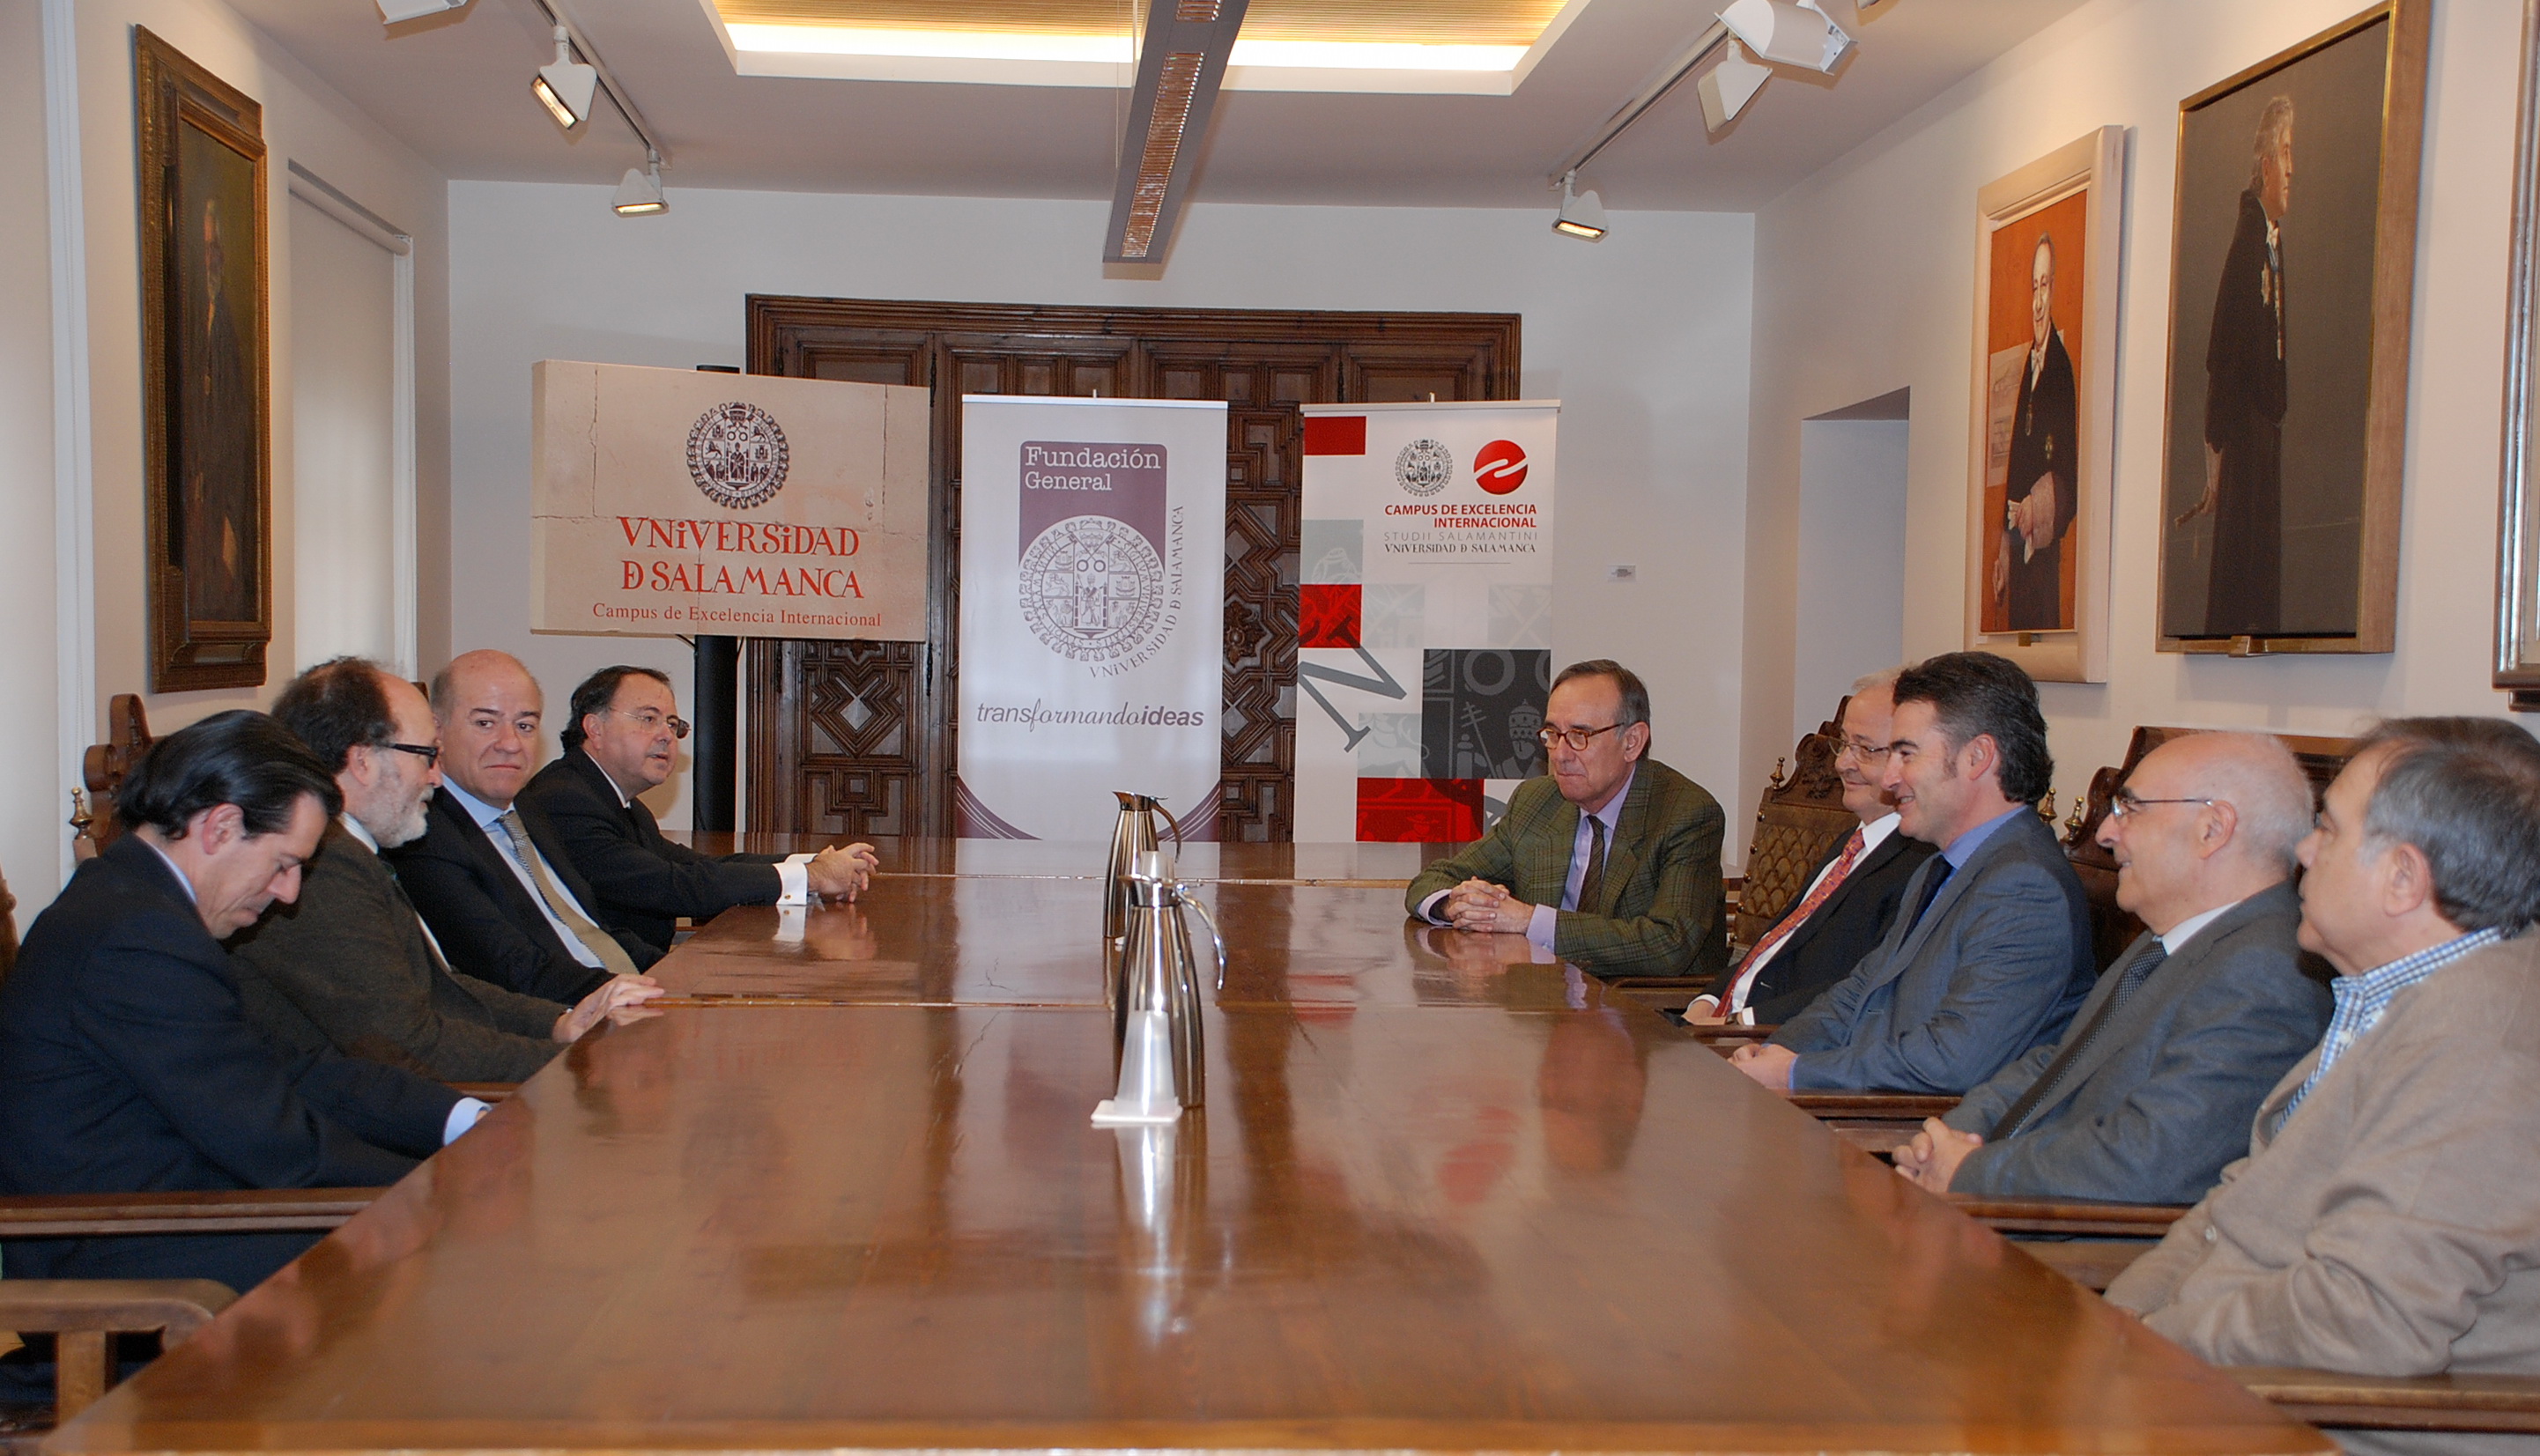 La Fundación General de la Universidad de Salamanca y Laboratorios INIBSA impulsarán la investigación farmacéutica